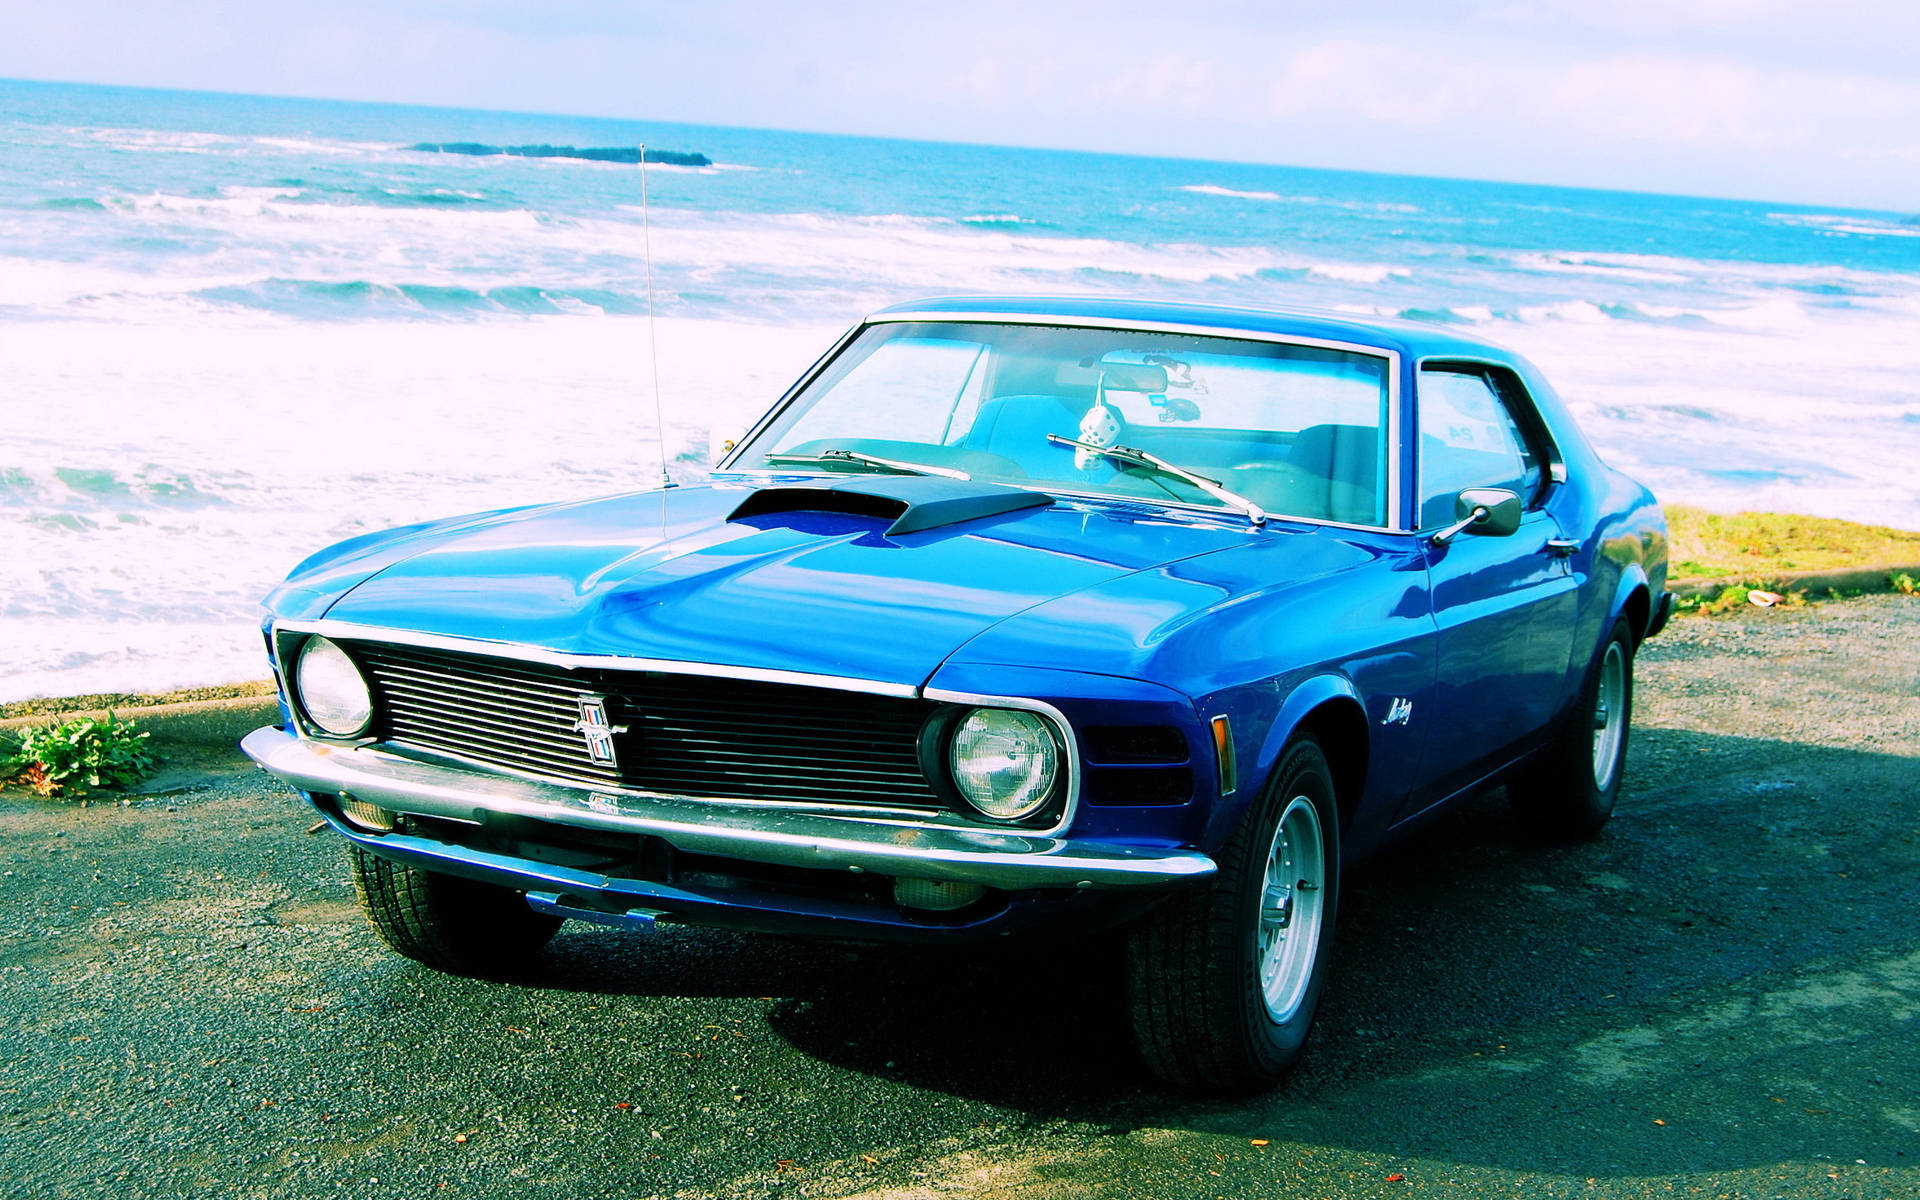 Vintage Mustang Hd On Beach